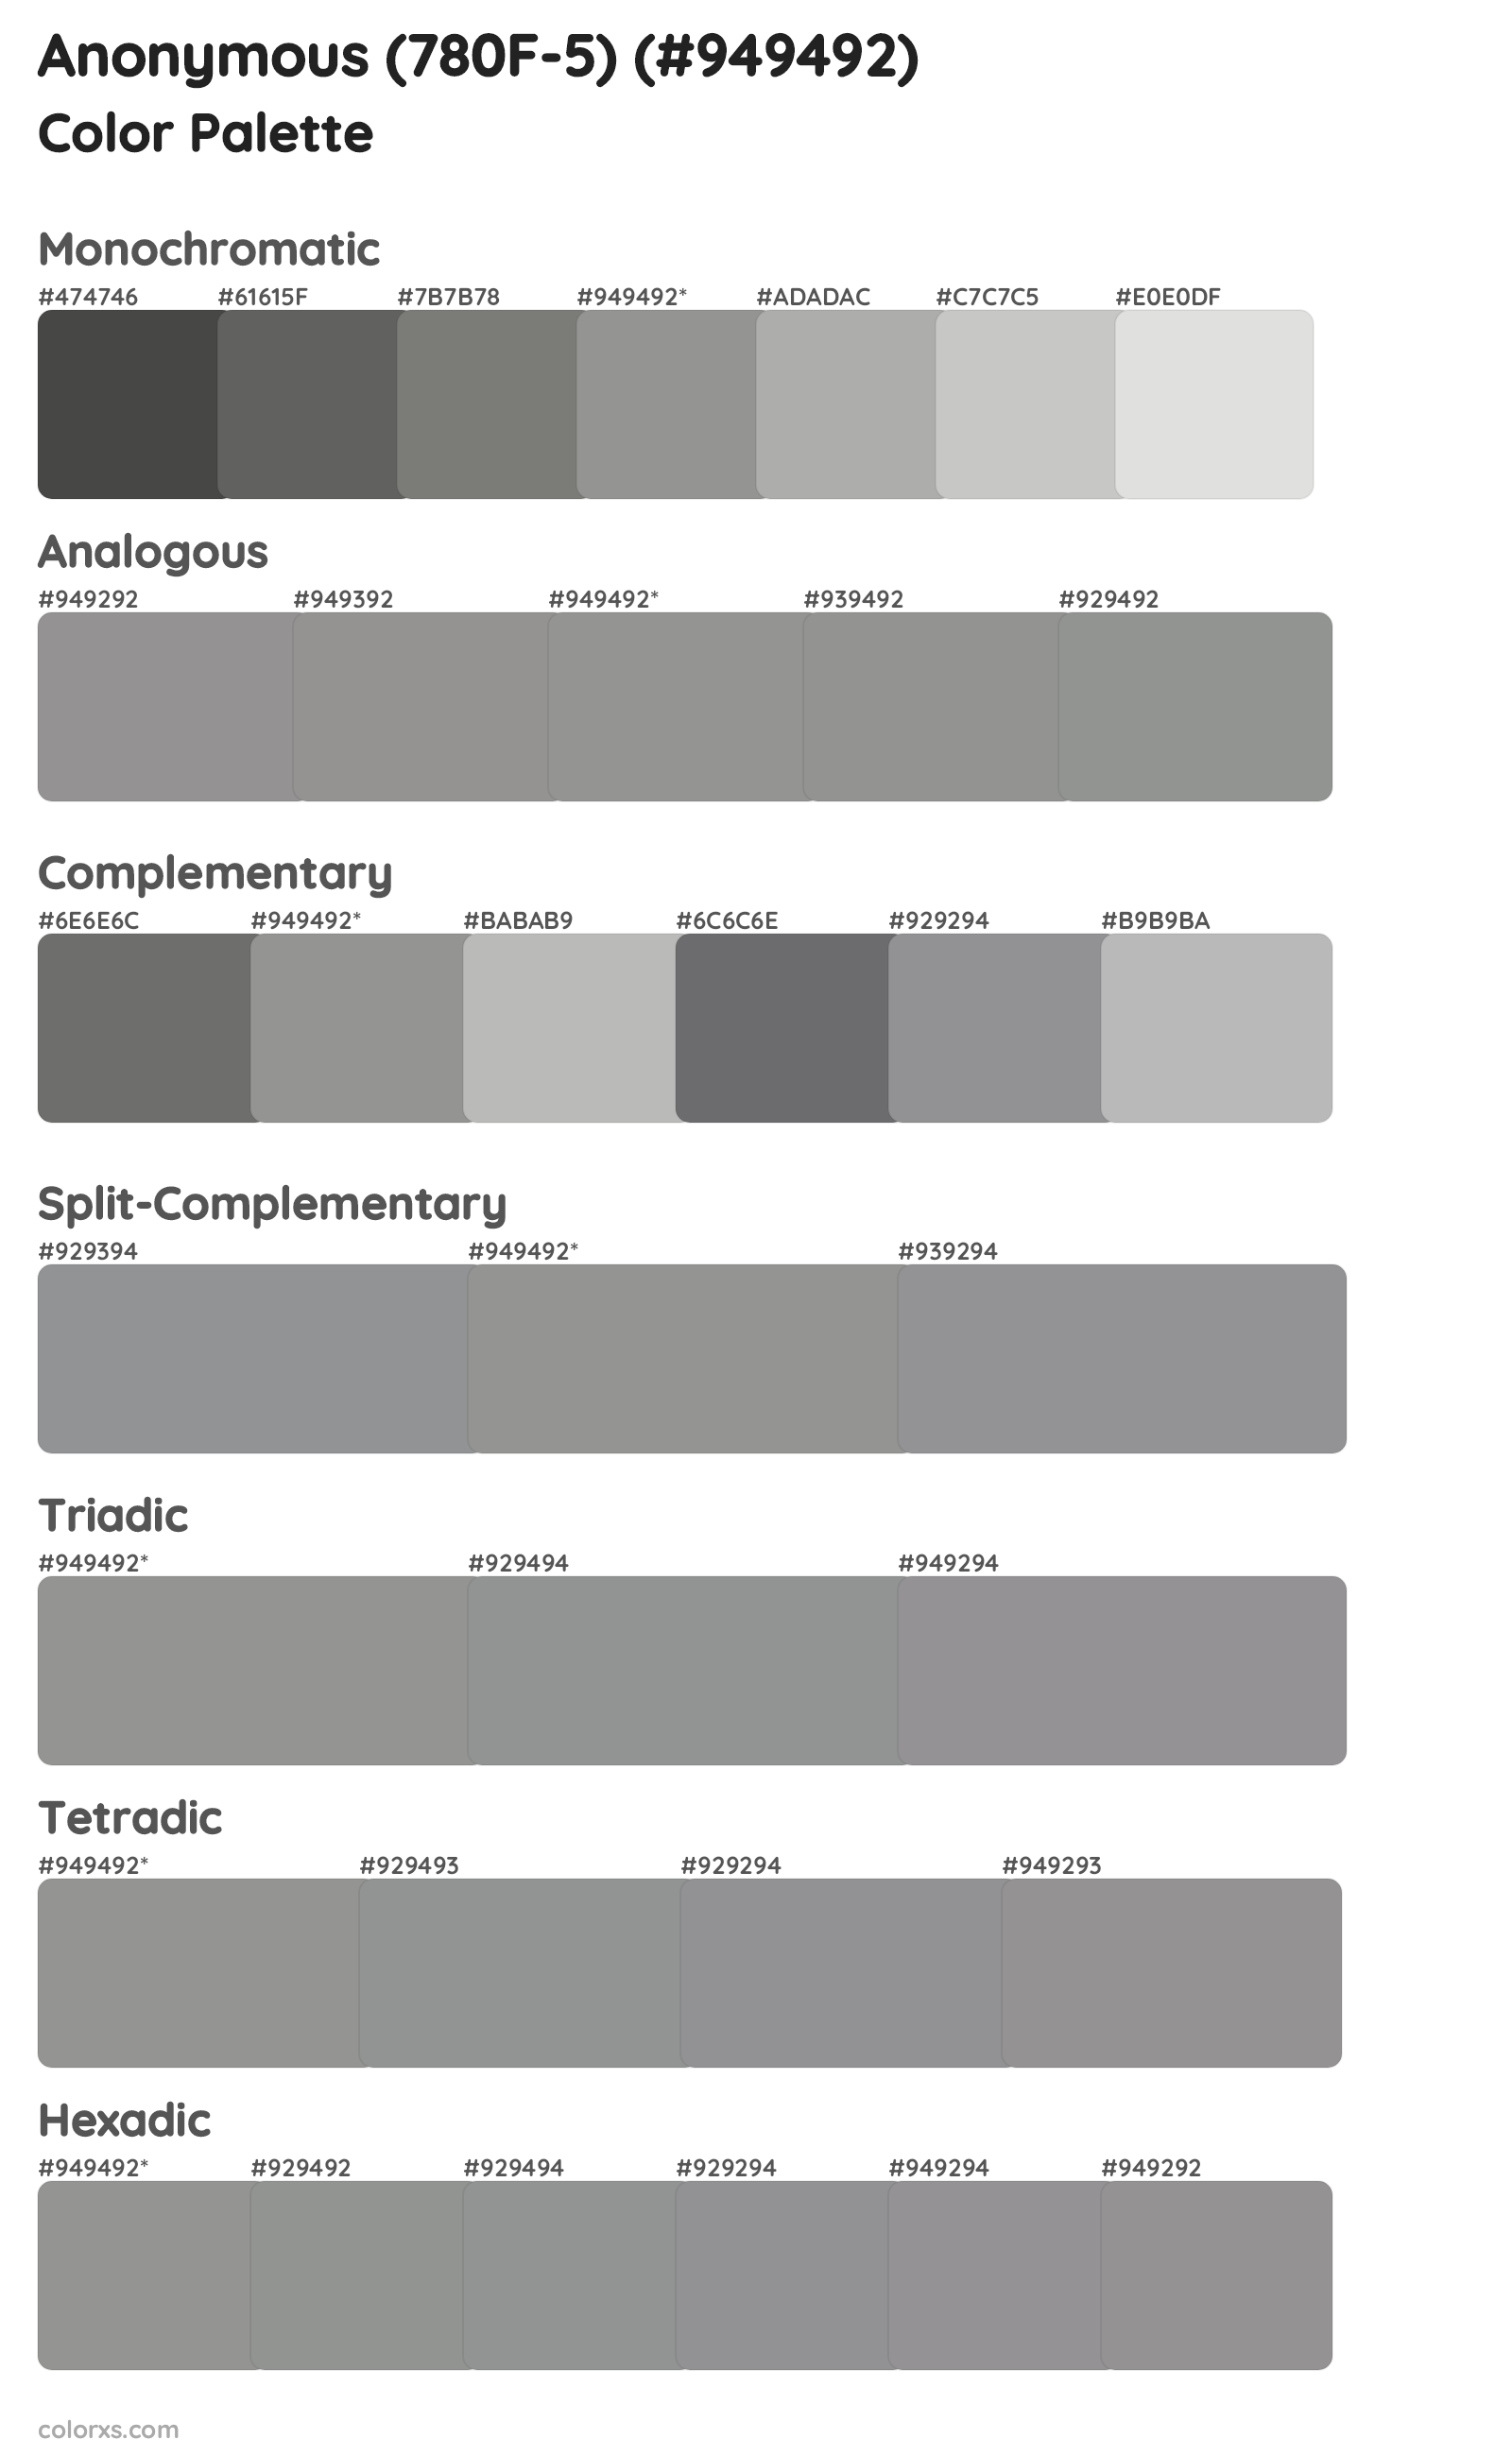 Anonymous (780F-5) Color Scheme Palettes